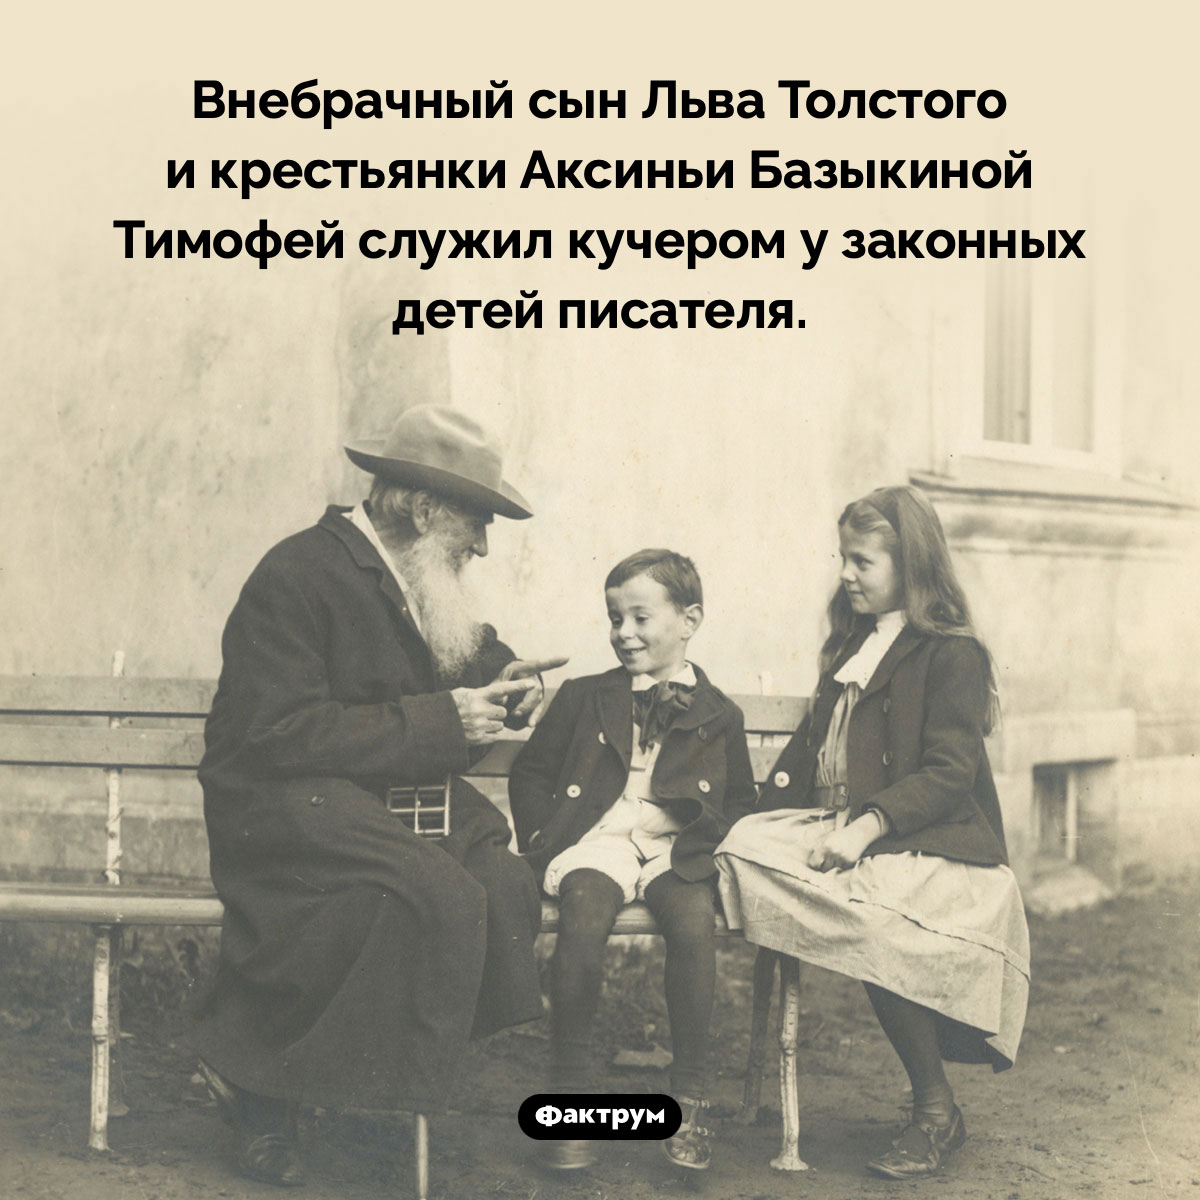 Внебрачный сын Льва Толстого. Внебрачный сын Льва Толстого и крестьянки Аксиньи Базыкиной Тимофей служил кучером у законных детей писателя.